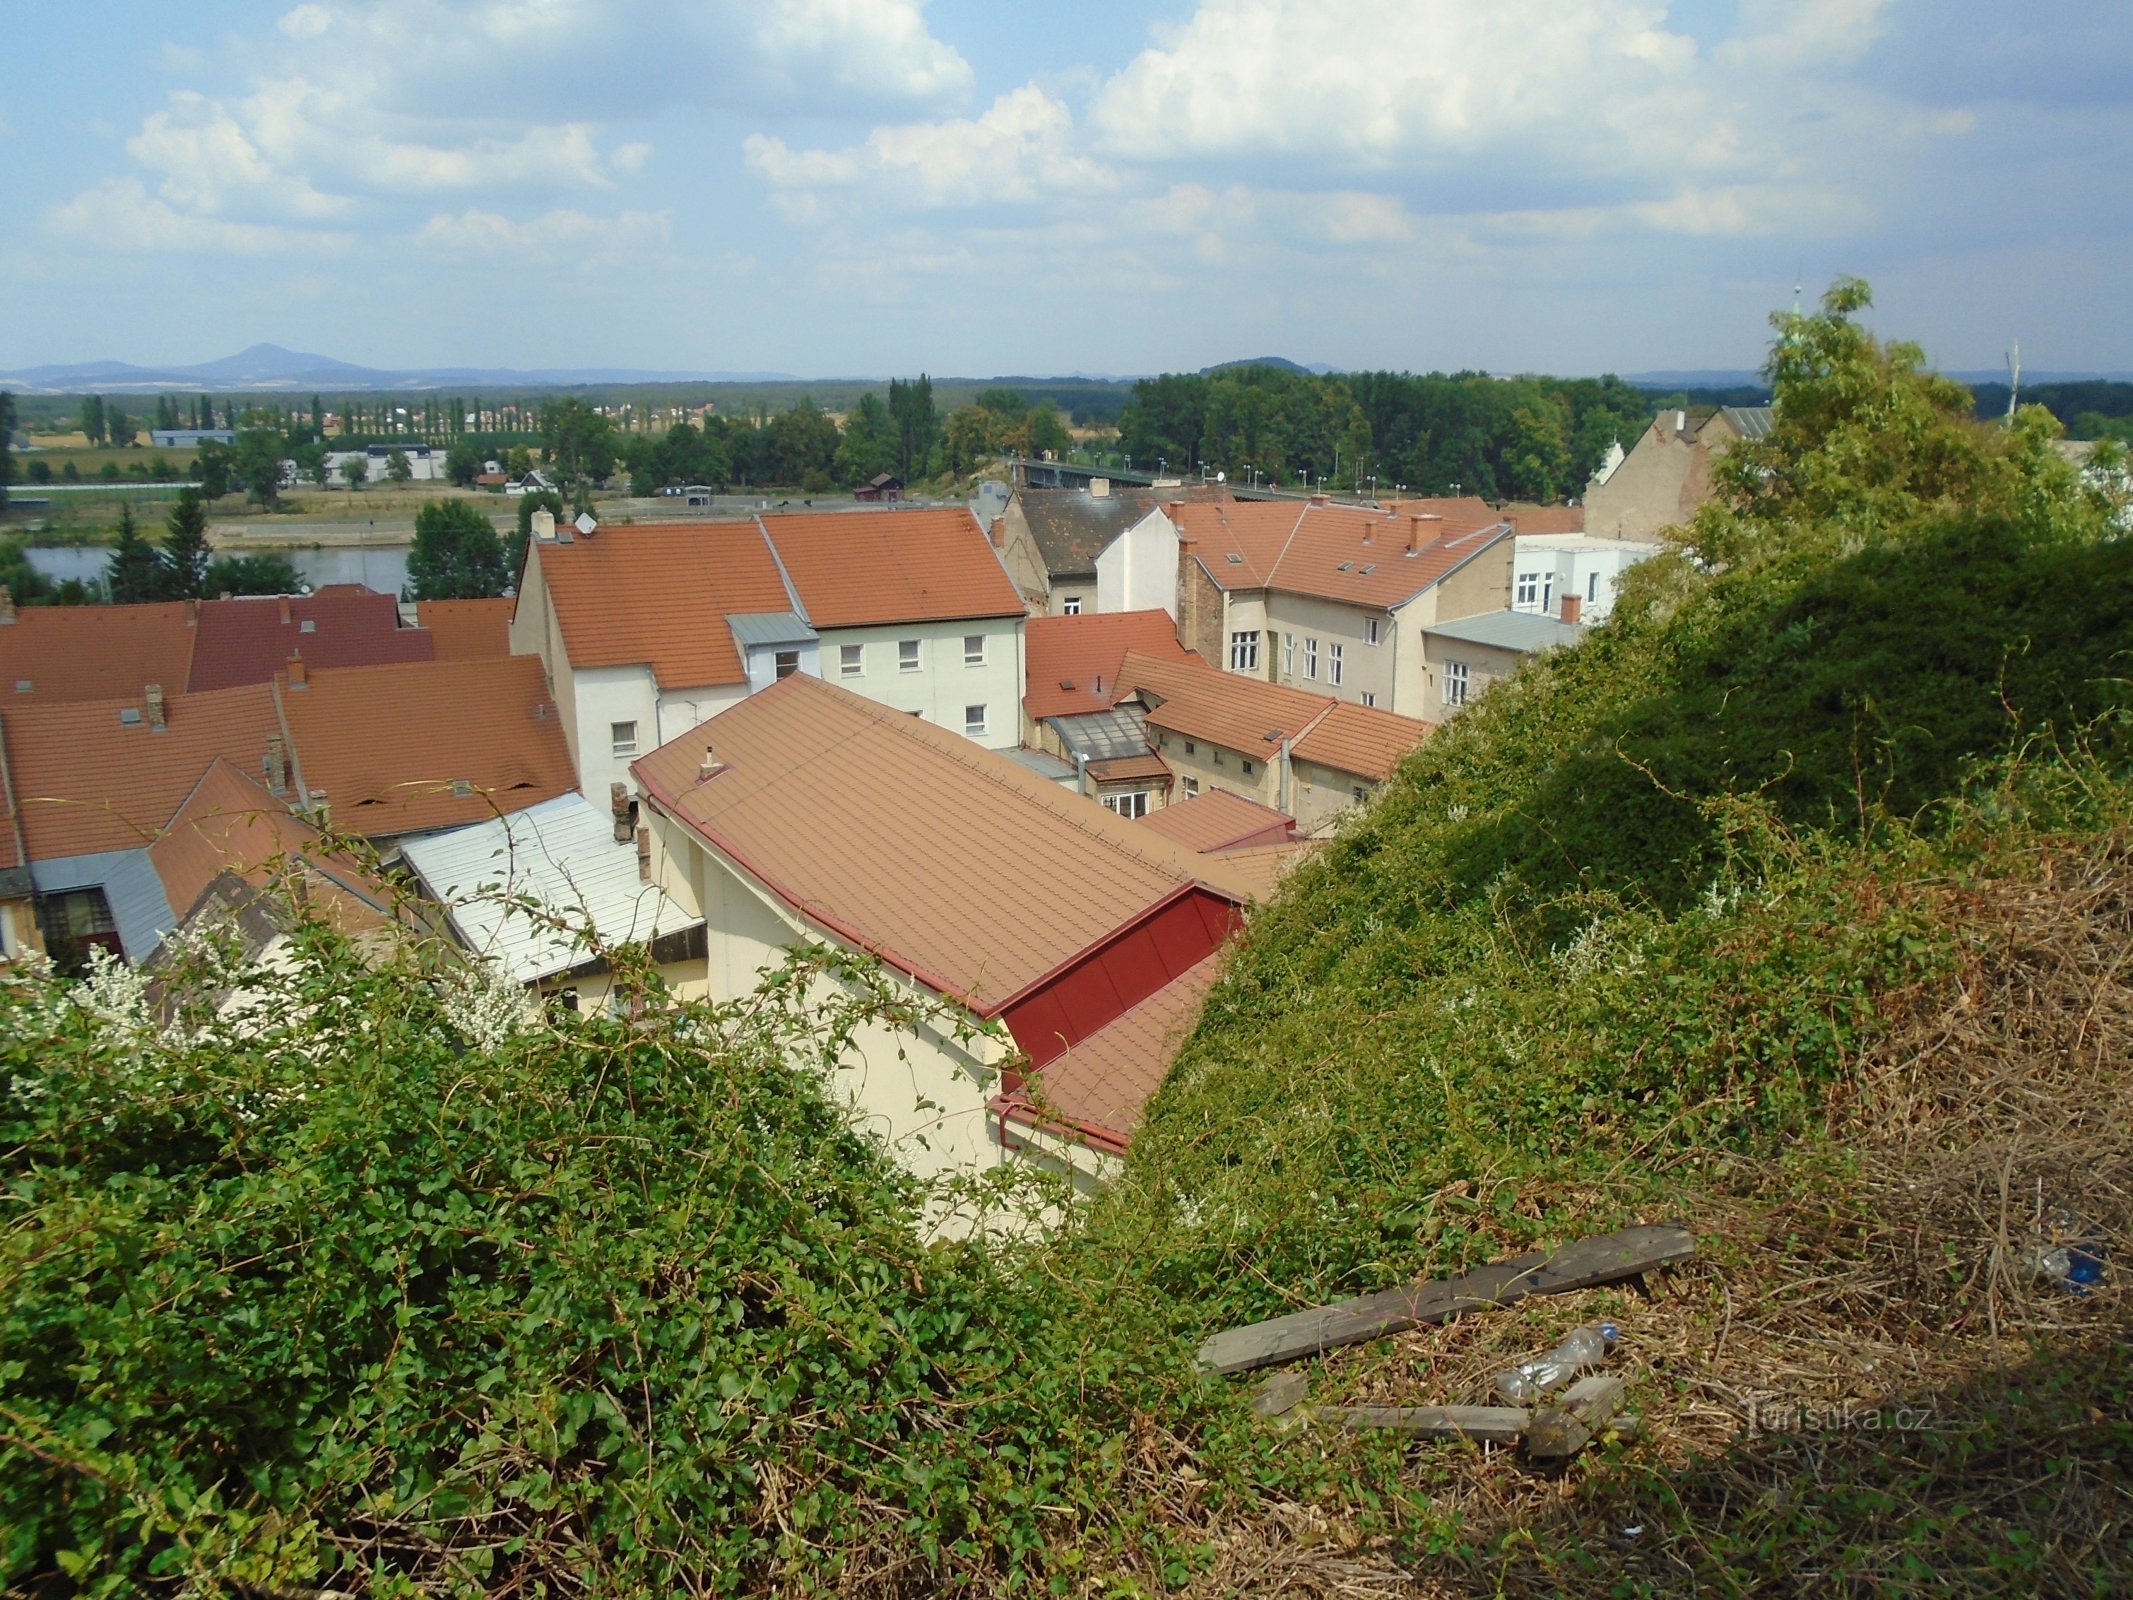 Kilátás a Hláskáról (Roudnice nad Labem)